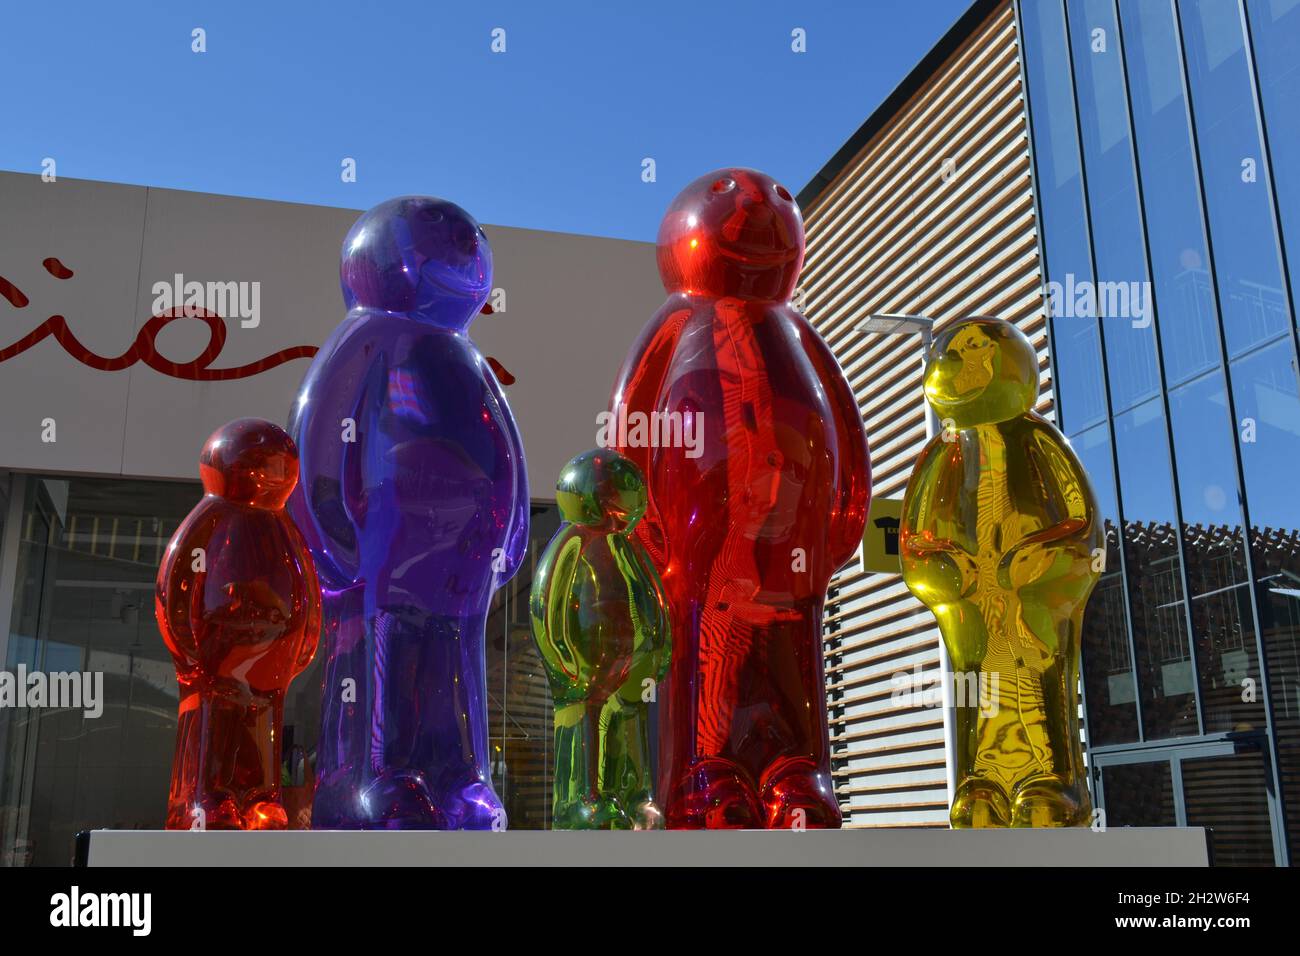 Mailand, Italien - 24. September 2015: Jelly Babies Series aus transparentem farbigem Harz des italienischen Künstlers Mauro Perucchetti auf der EXPO Milano 2015. Stockfoto